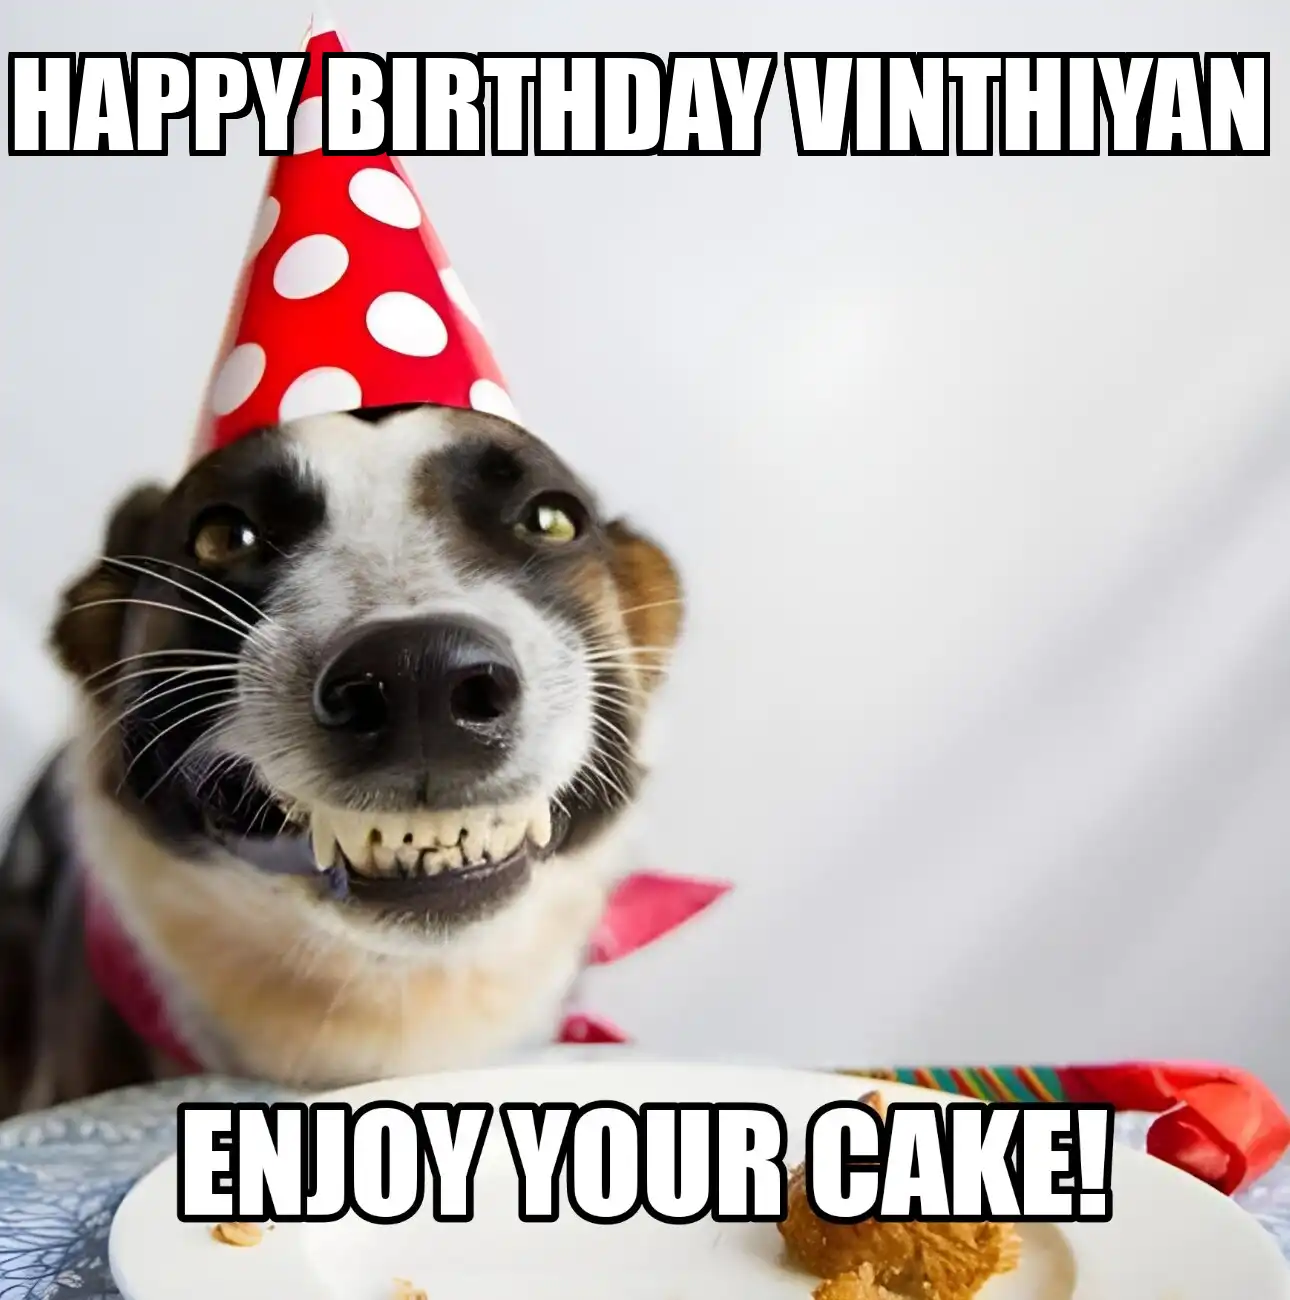 Happy Birthday Vinthiyan Enjoy Your Cake Dog Meme